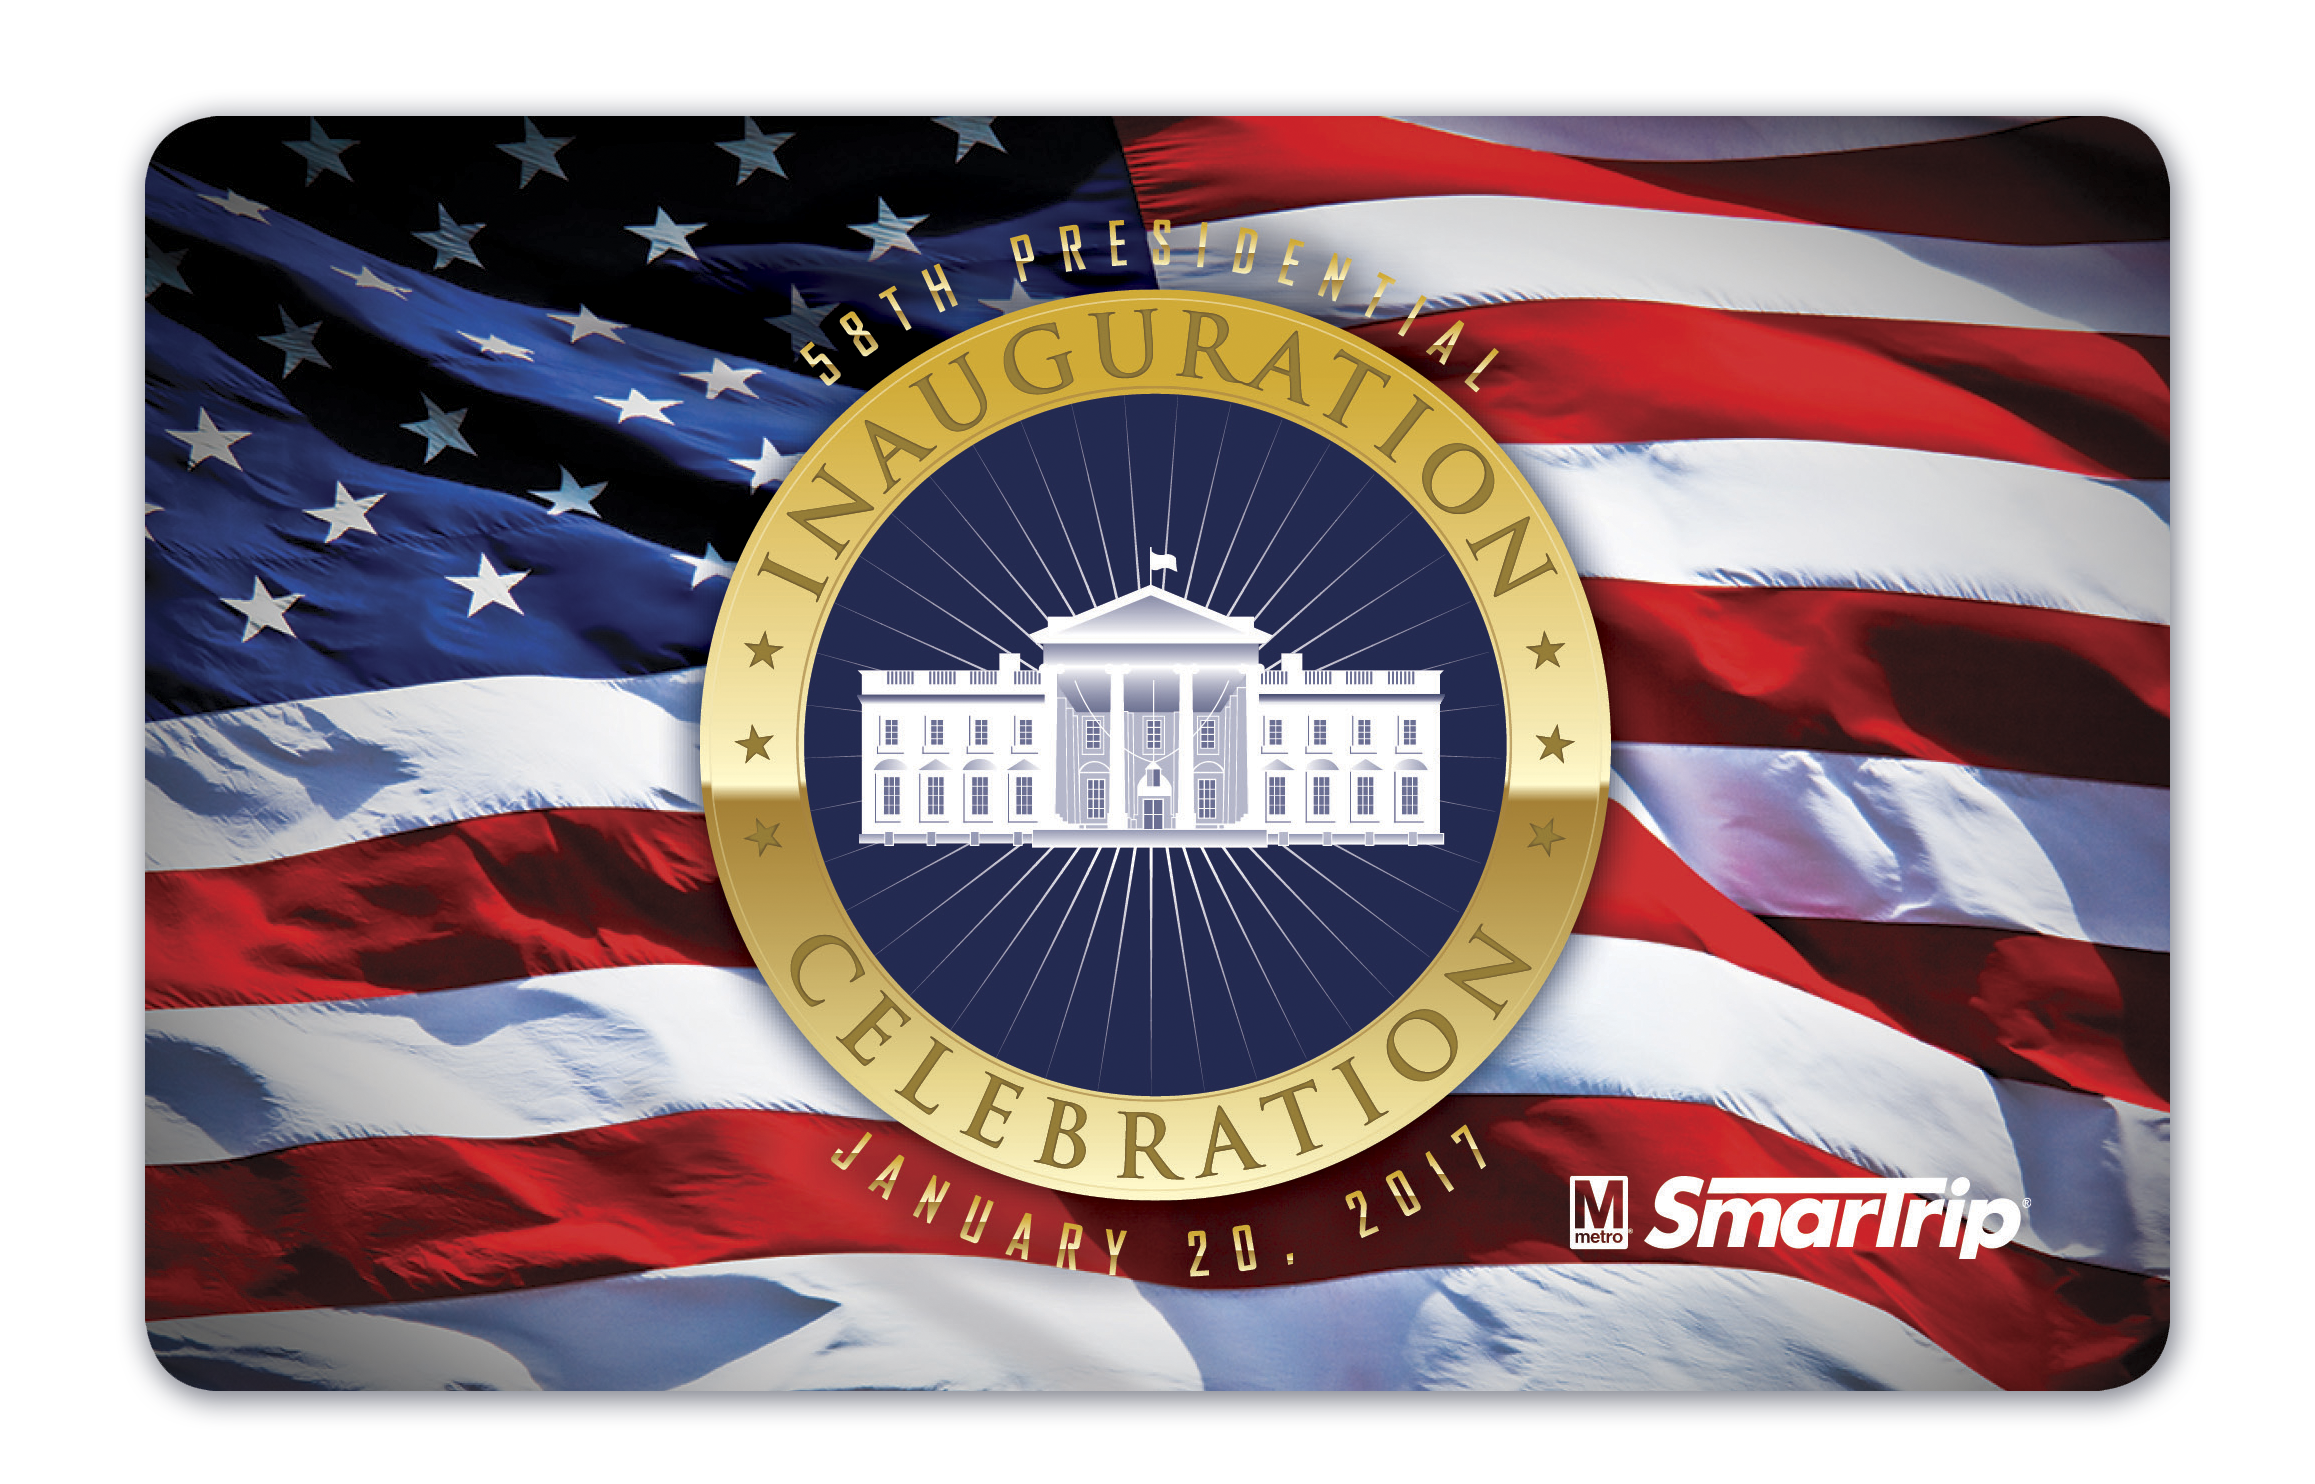 Inauguration SmarTrip Trump design